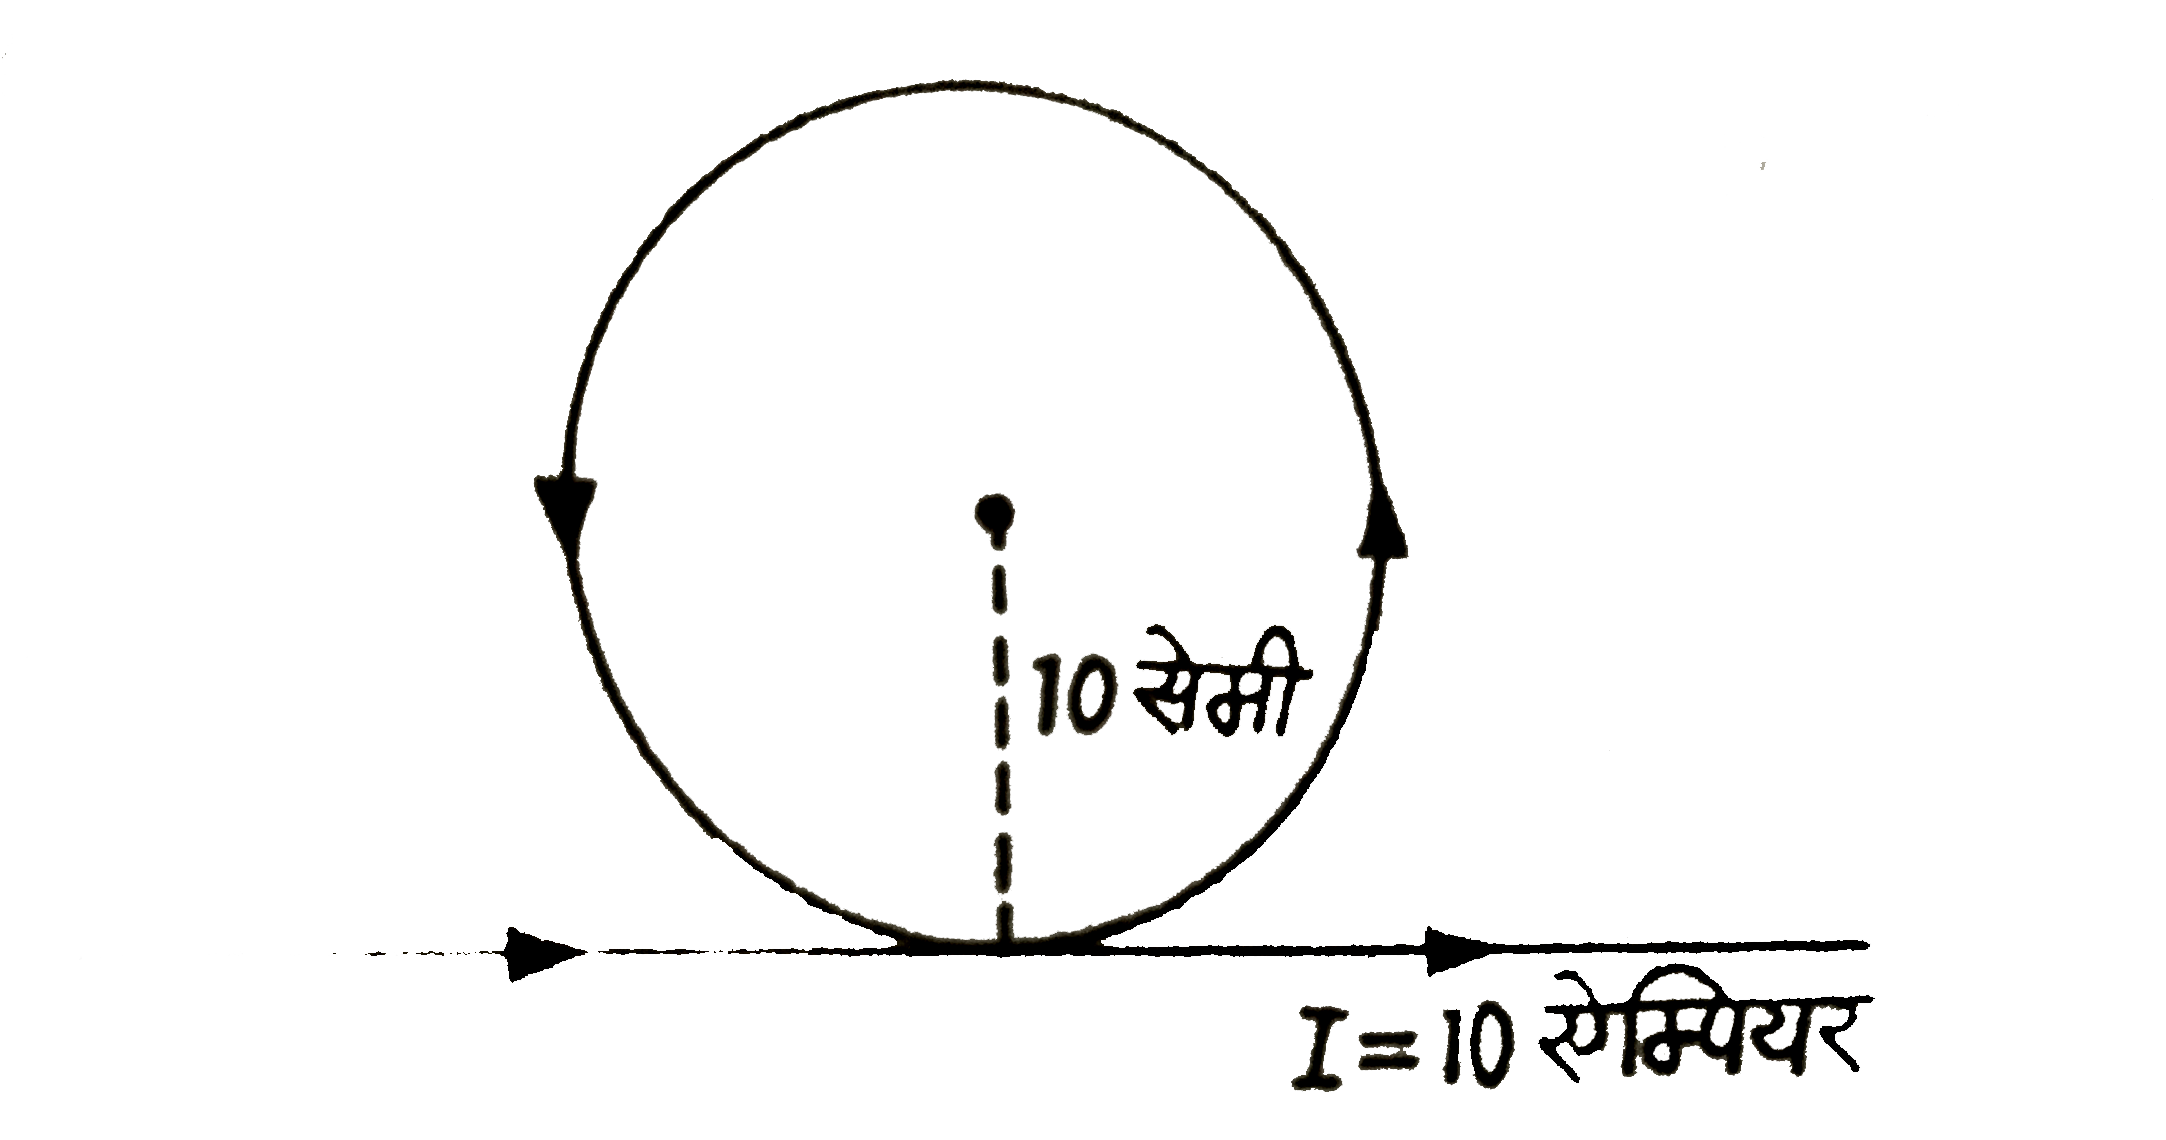 एक लम्बे तार को चित्र की तरह मोड़ा गया है। यदि तर के वृत्तीय लूप की त्रिज्या 10 सेमी तार में बहने वाली धारा का मान 10 ऐम्पियर हो, तो वृत्तीय भाग केंद्र पर उत्पन्न चुंबकीय क्षेत्र की तीव्रता कीजिए ।